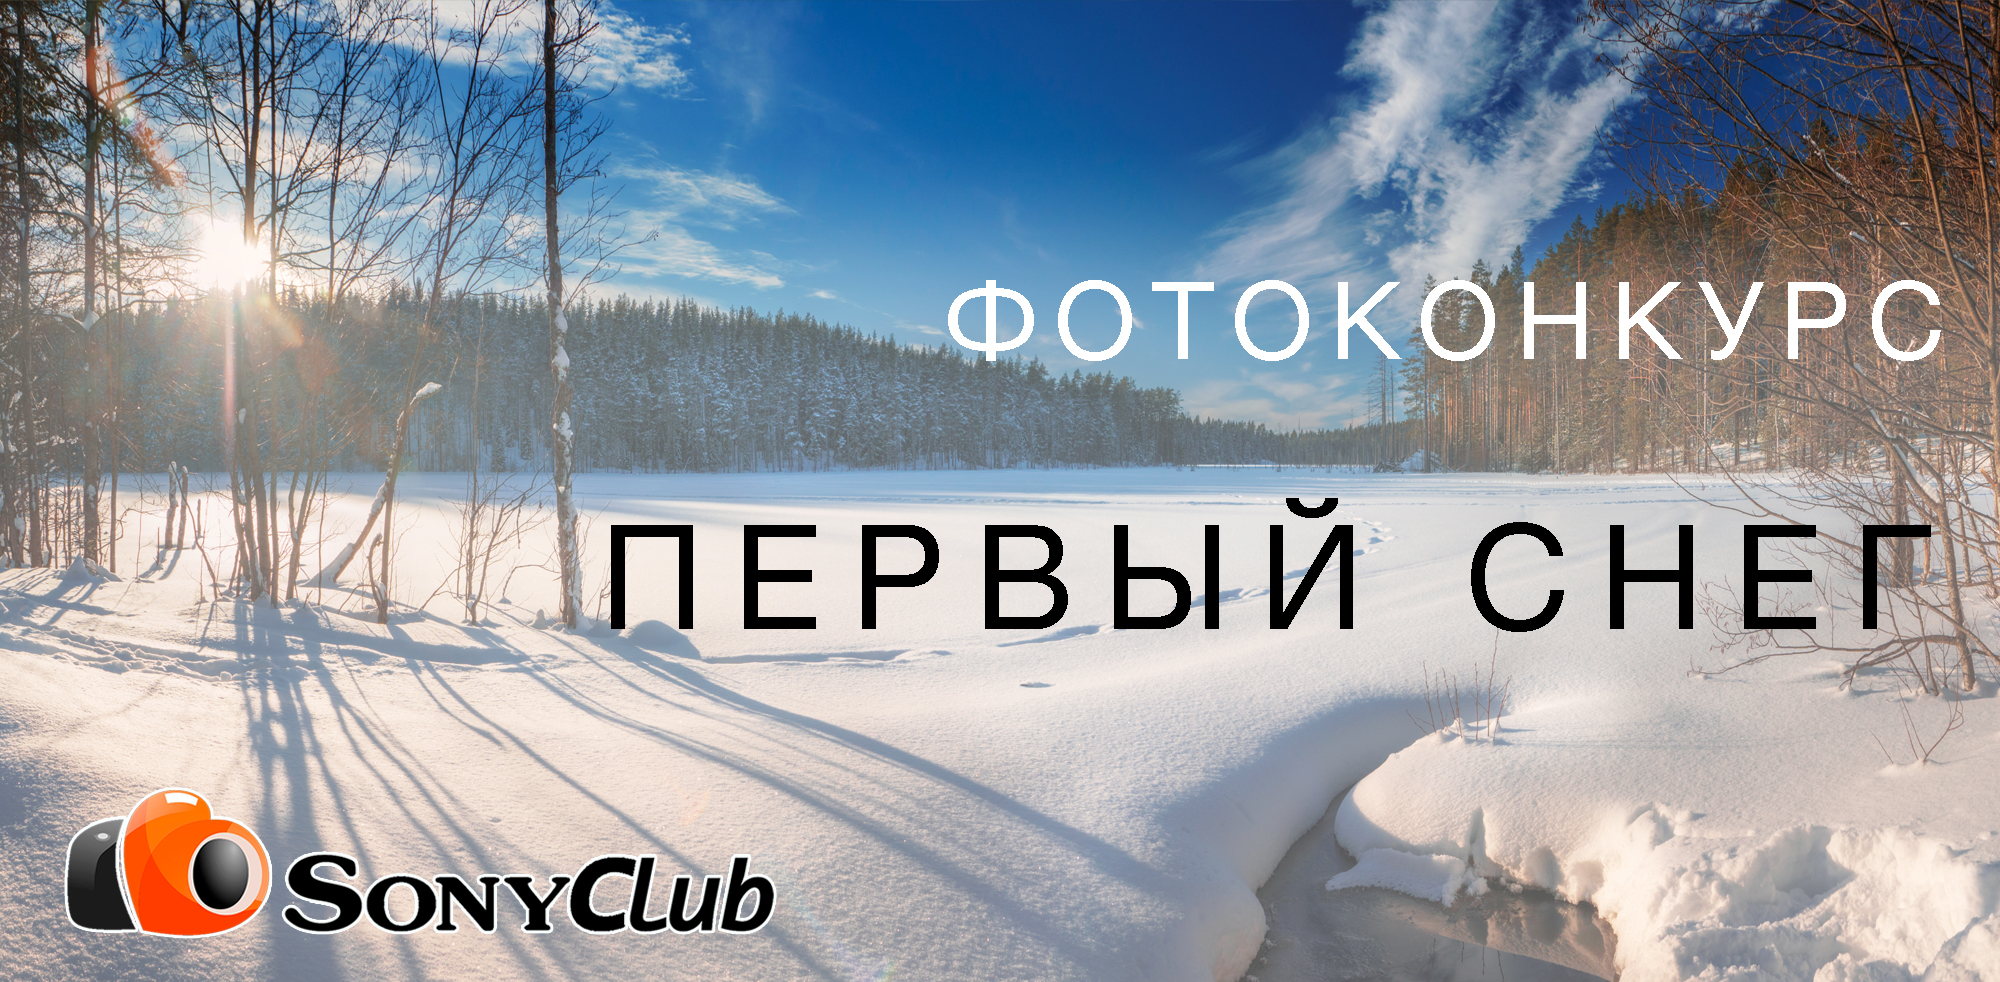 Фотоконкурс "Первый снег"